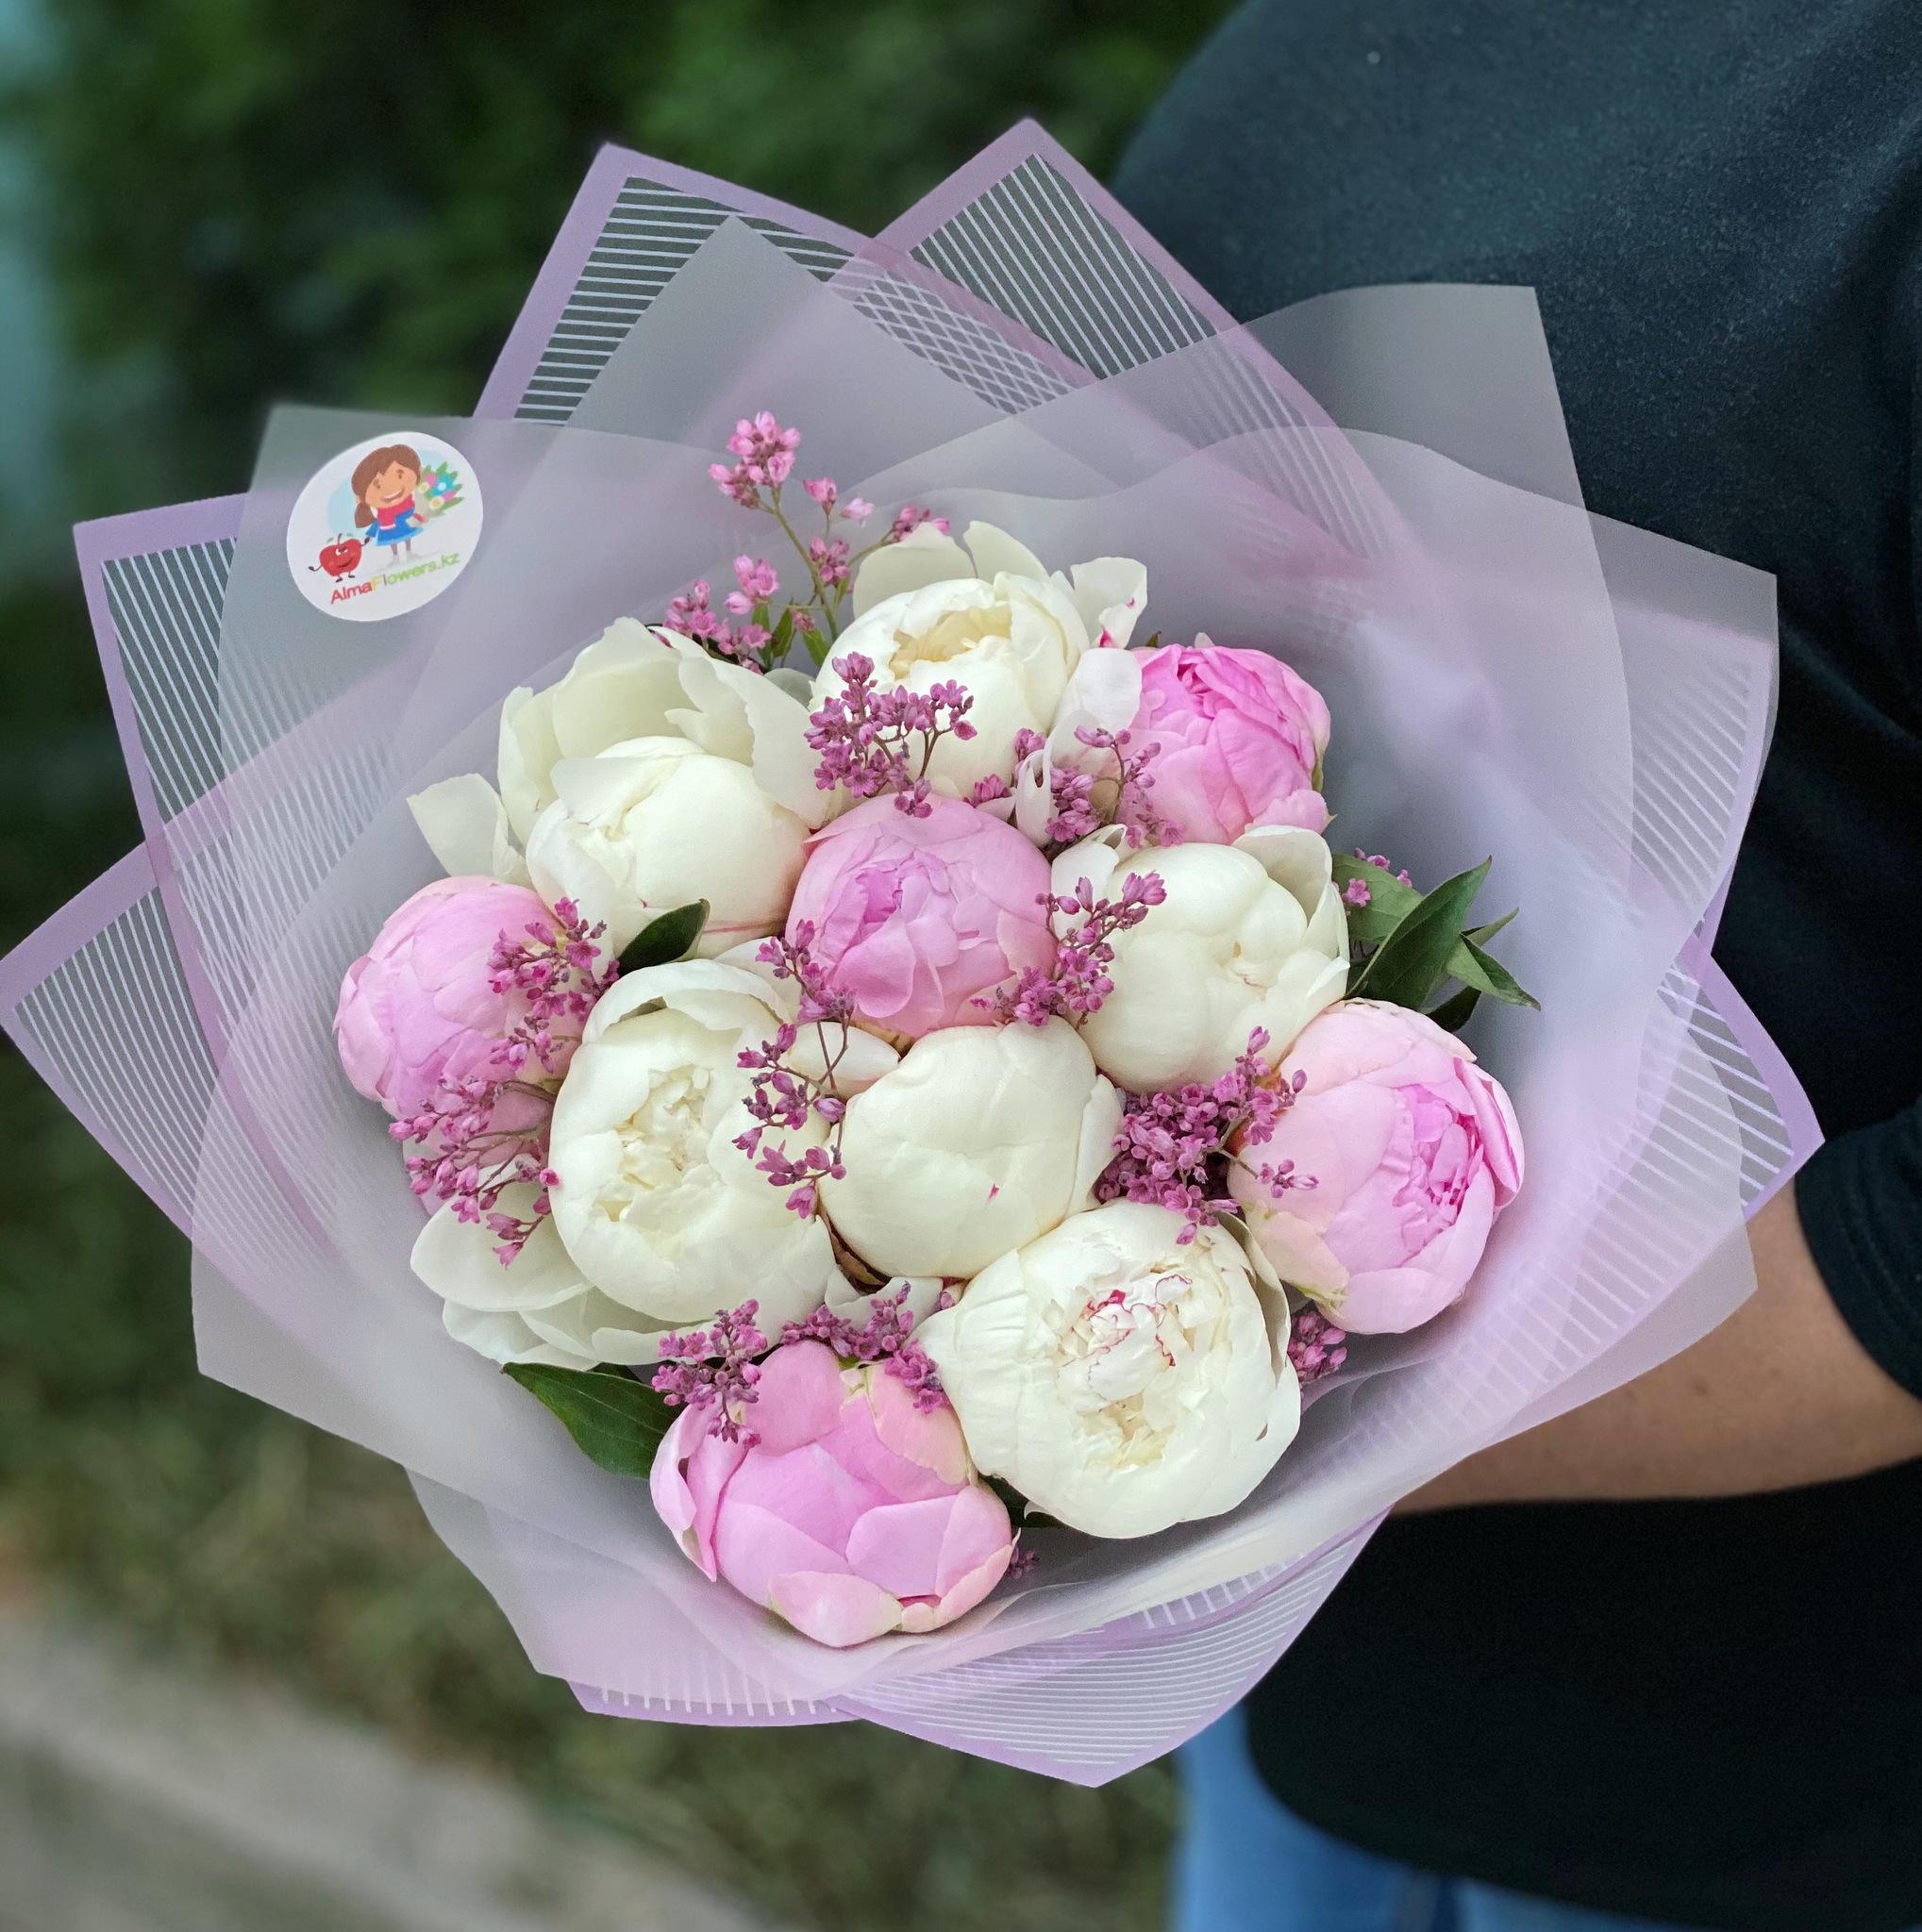 Самые красивые букеты из пионов роз хризантем